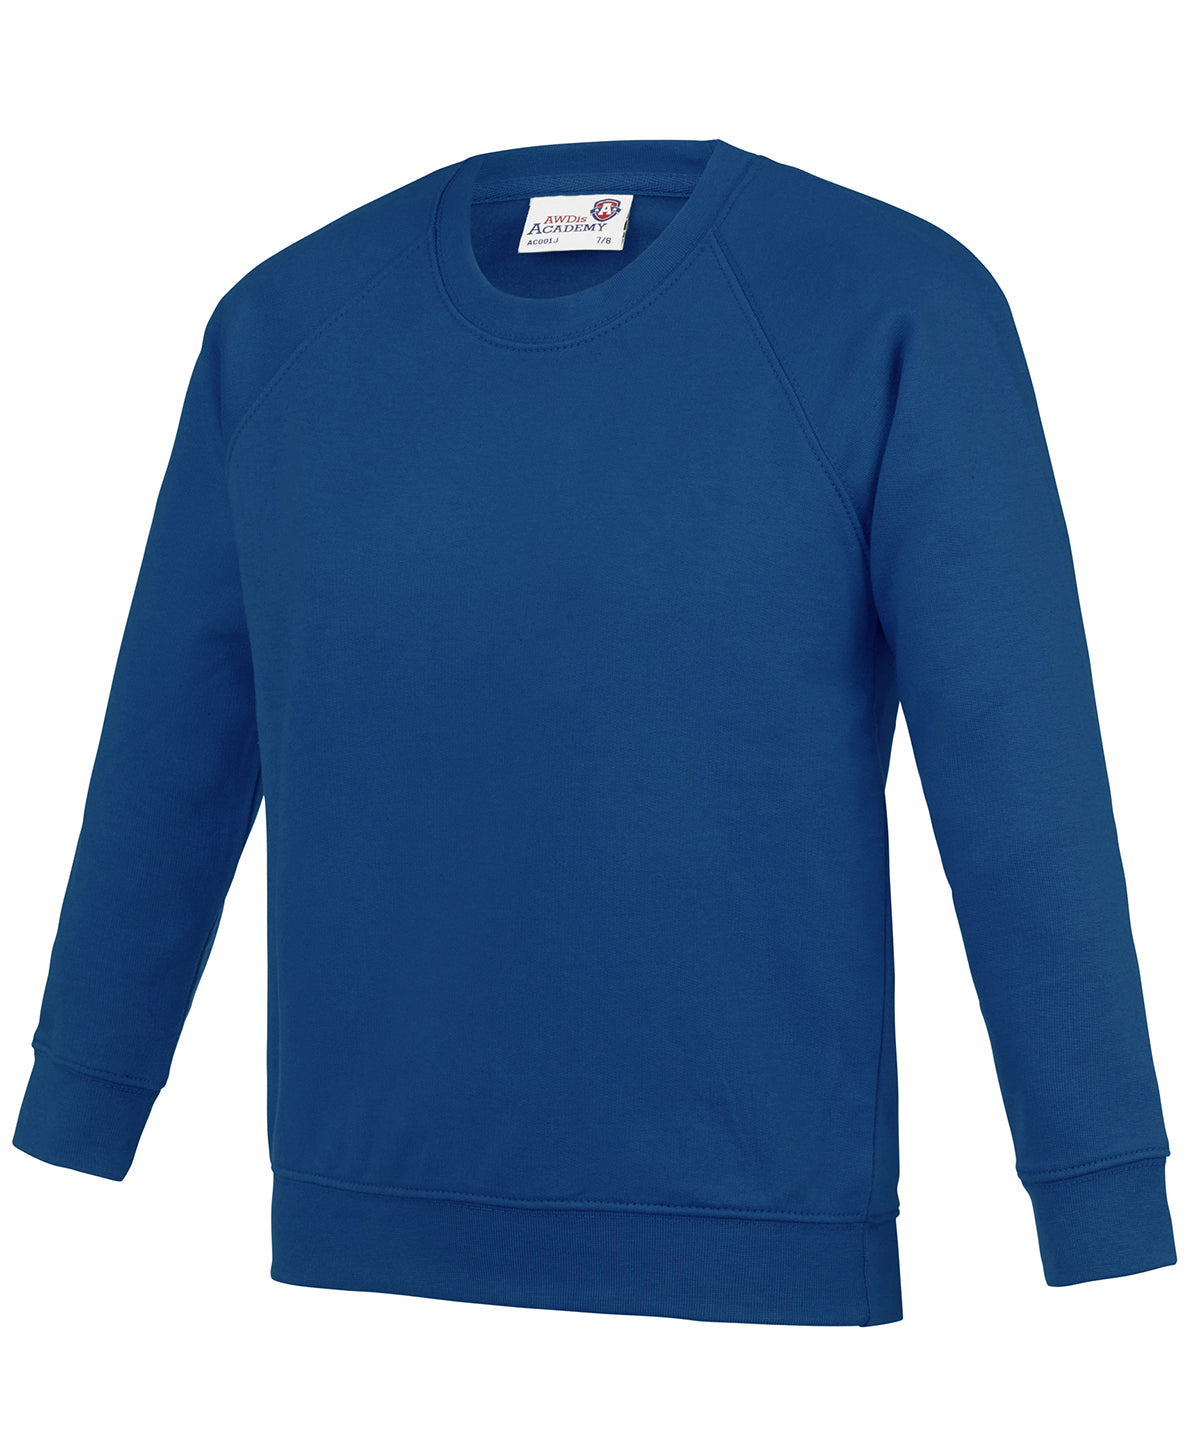 Personalised Sweatshirts - Black AWDis Academy Kids Academy raglan sweatshirt